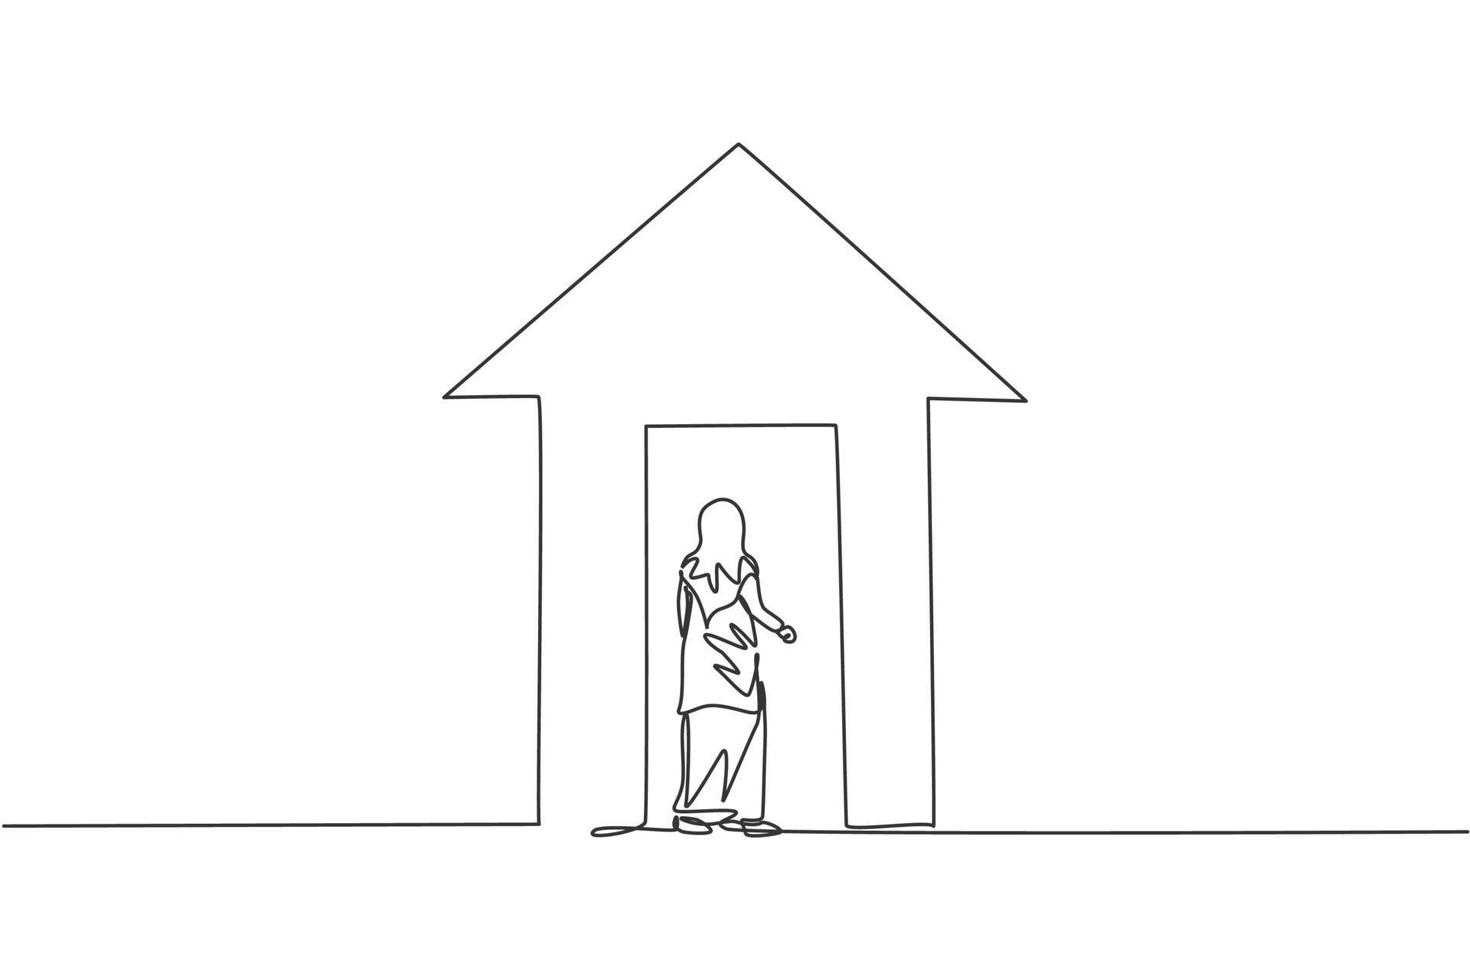 singolo disegno a tratteggio di una giovane donna d'affari araba entra nell'edificio freccia in su. concetto minimo metafora di crescita finanziaria aziendale. illustrazione vettoriale grafica di disegno di disegno di linea continua moderna